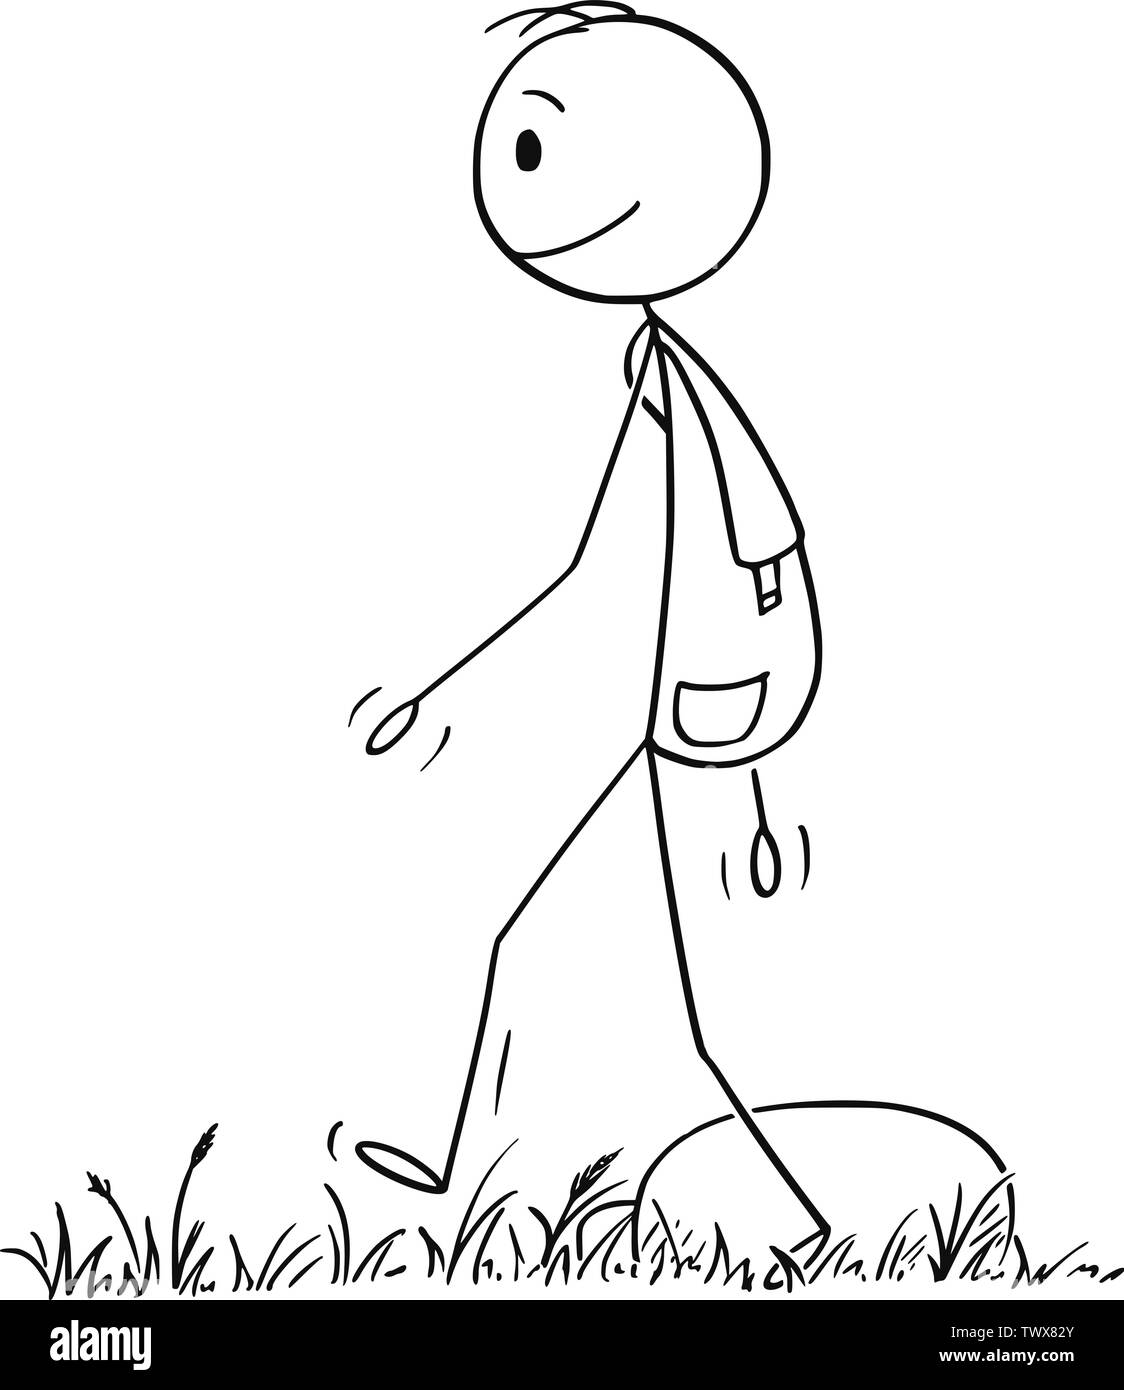 Vector cartoon stick figura disegno illustrazione concettuale di un escursionista o uomo con zaino escursionismo a piedi o su avventura nella natura. Illustrazione Vettoriale